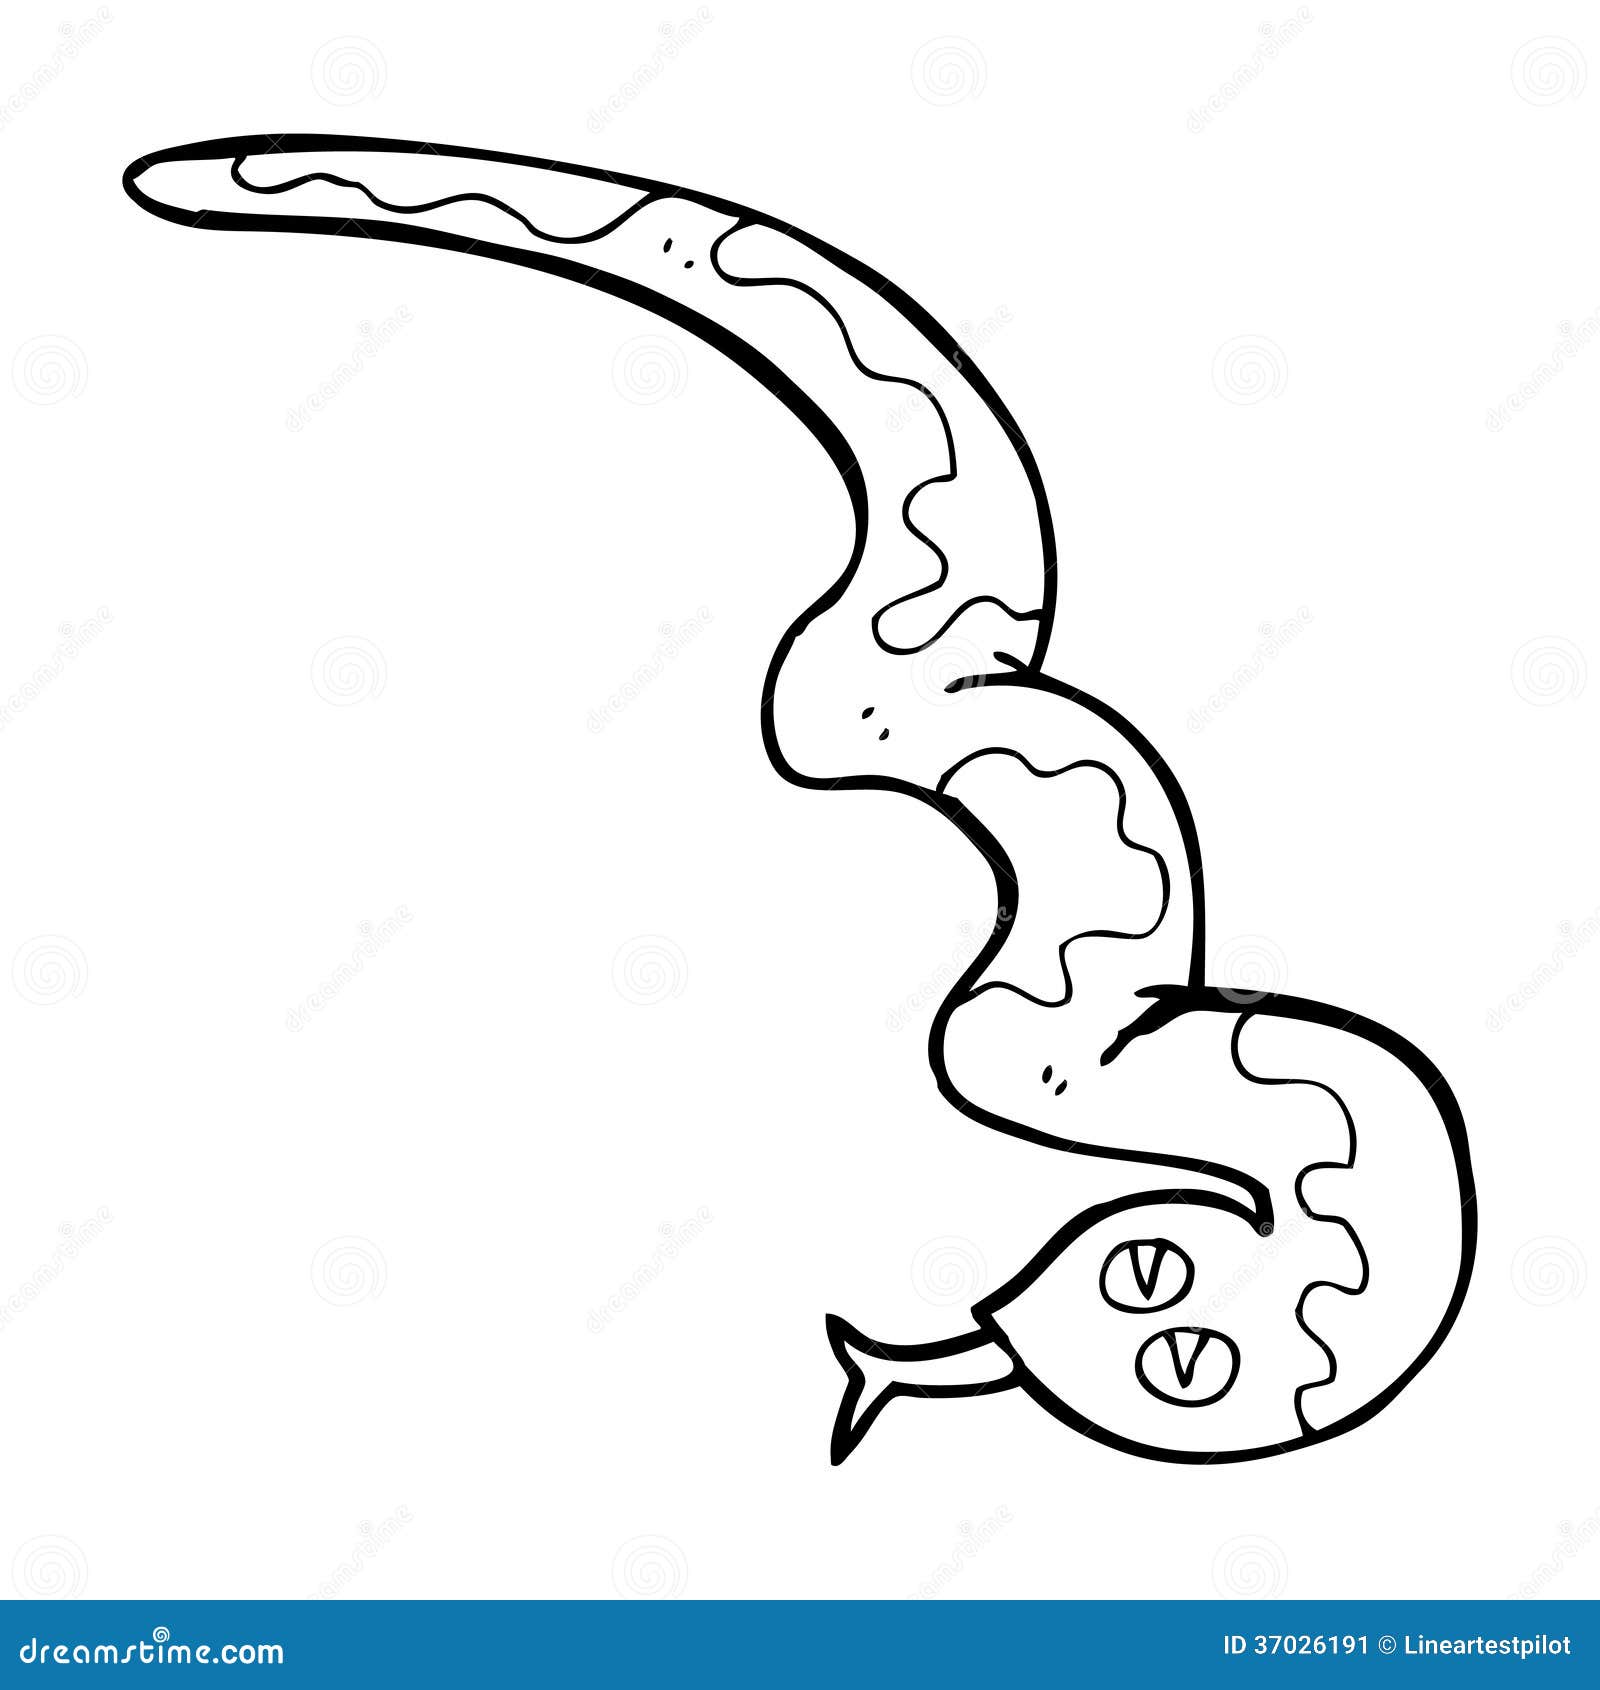 Cartoon hissing snake stock illustration. Illustration of quirky - 37026191